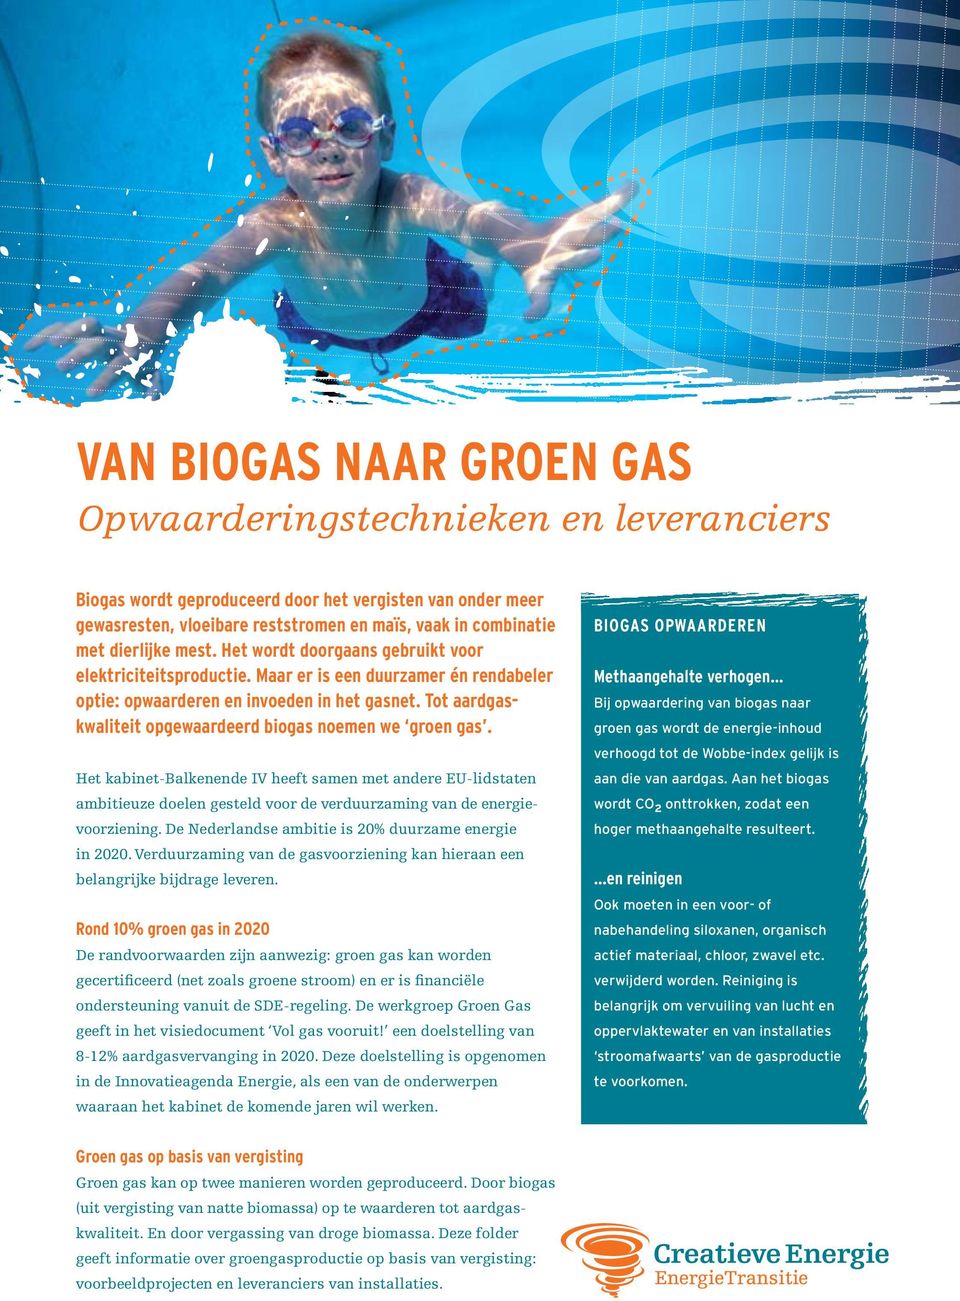 Tot aardgaskwaliteit opgewaardeerd biogas noemen we groen gas. Het kabinet-balkenende IV heeft samen met andere EU-lidstaten ambitieuze doelen gesteld voor de verduurzaming van de energievoorziening.